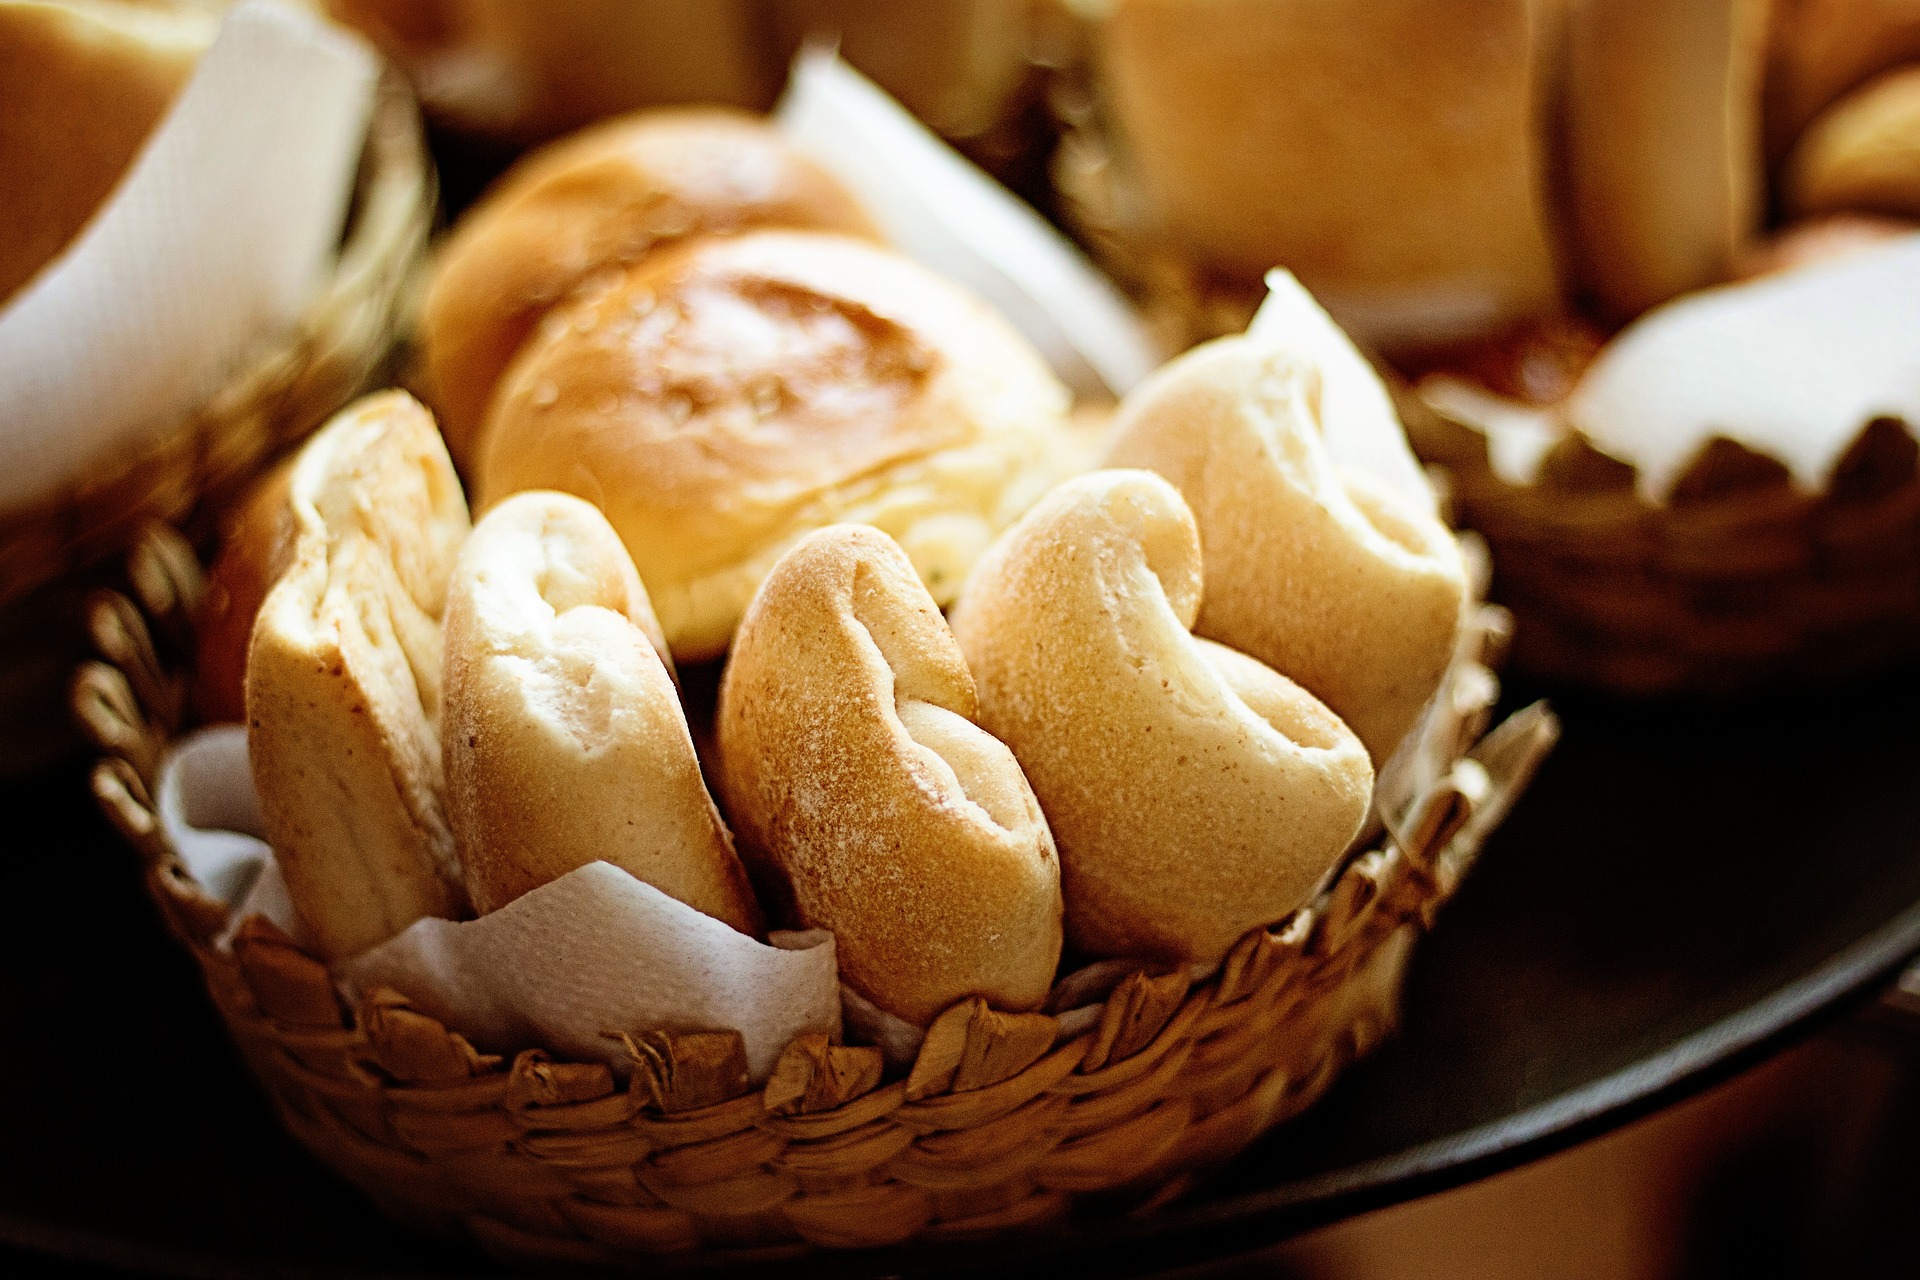 האם יש הבדל בריאותי בין לחם לבן לפיתה?